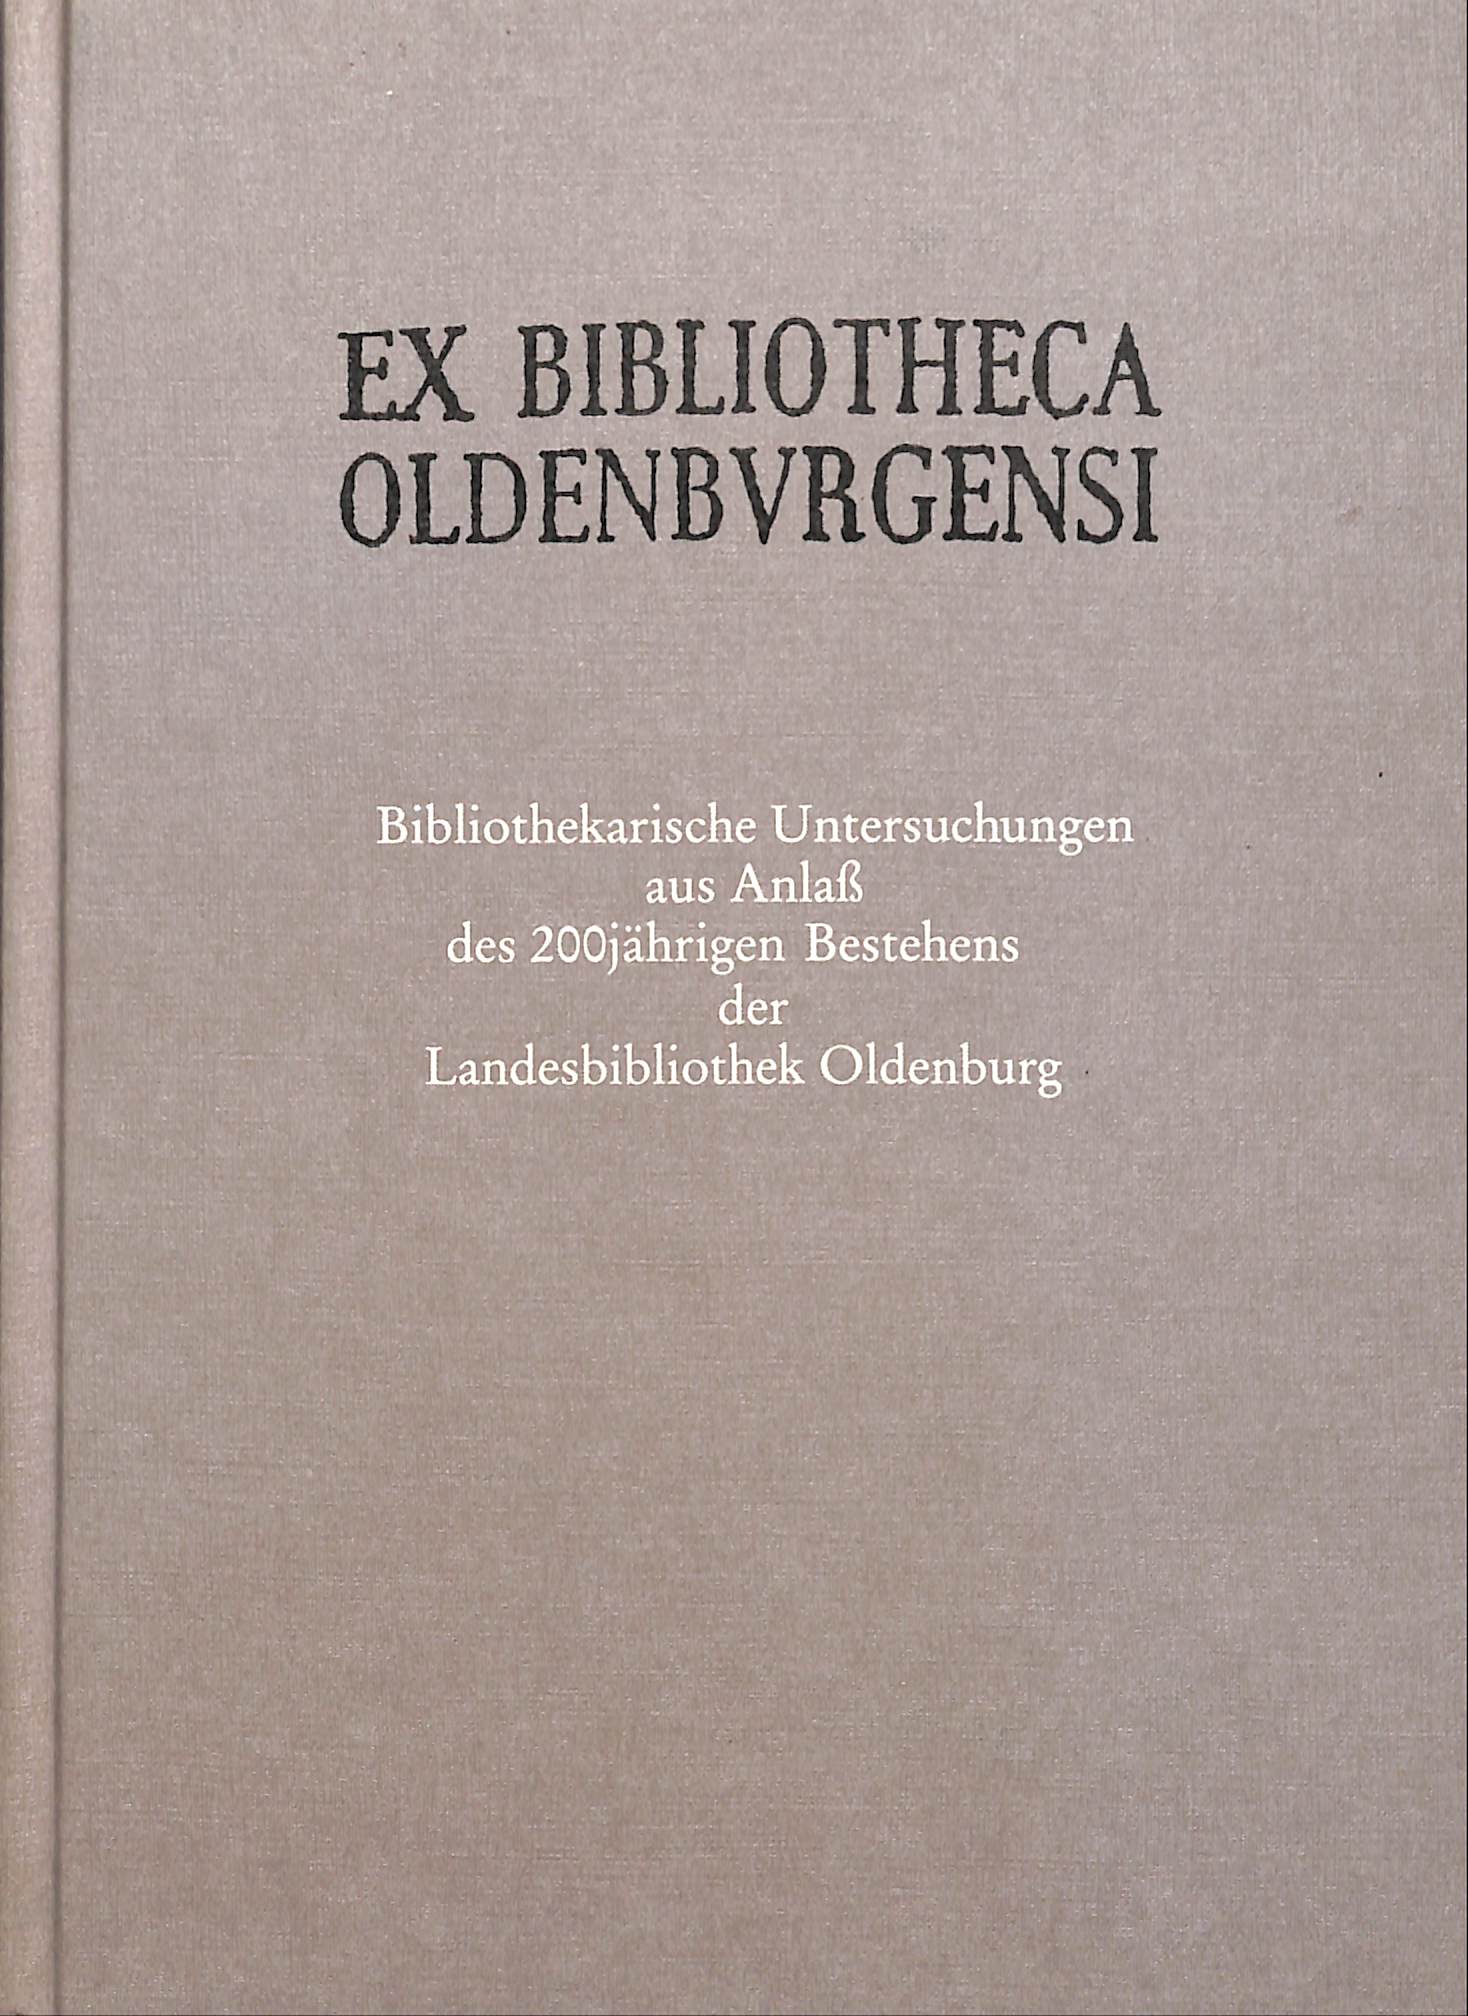 Ex Bibliotheca Oldenburgensi. Bibliothekarische Untersuchungen aus Anlass des 200jährigen Bestehens der Landesbibliothek Oldenburg. - KOOLMAN, EGBERT (ed.).